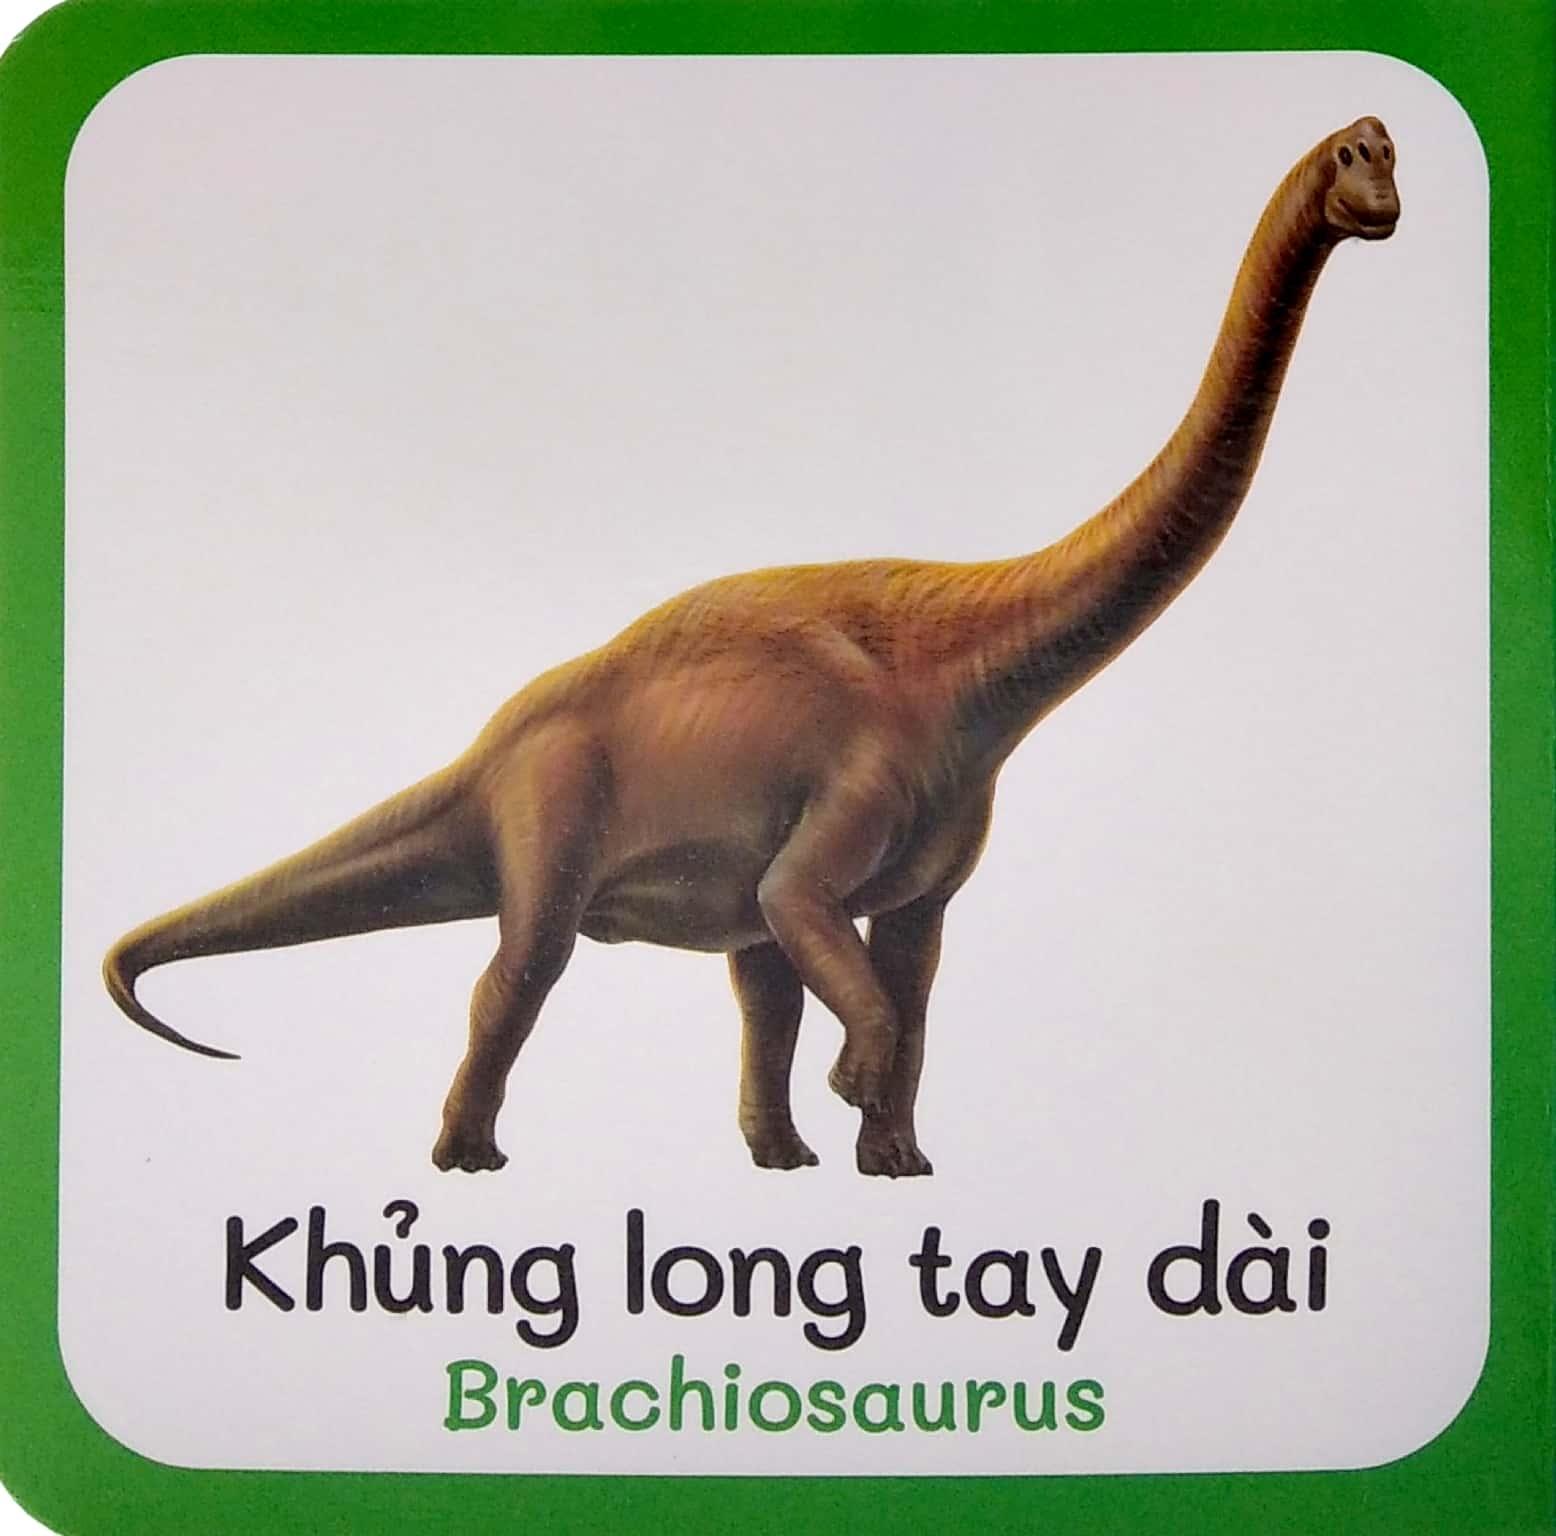 Từ Điển Bằng Hình Đầu Tiên Của Bé - Baby'S First Picture Dictionary - Dinosaurs - Khủng Long